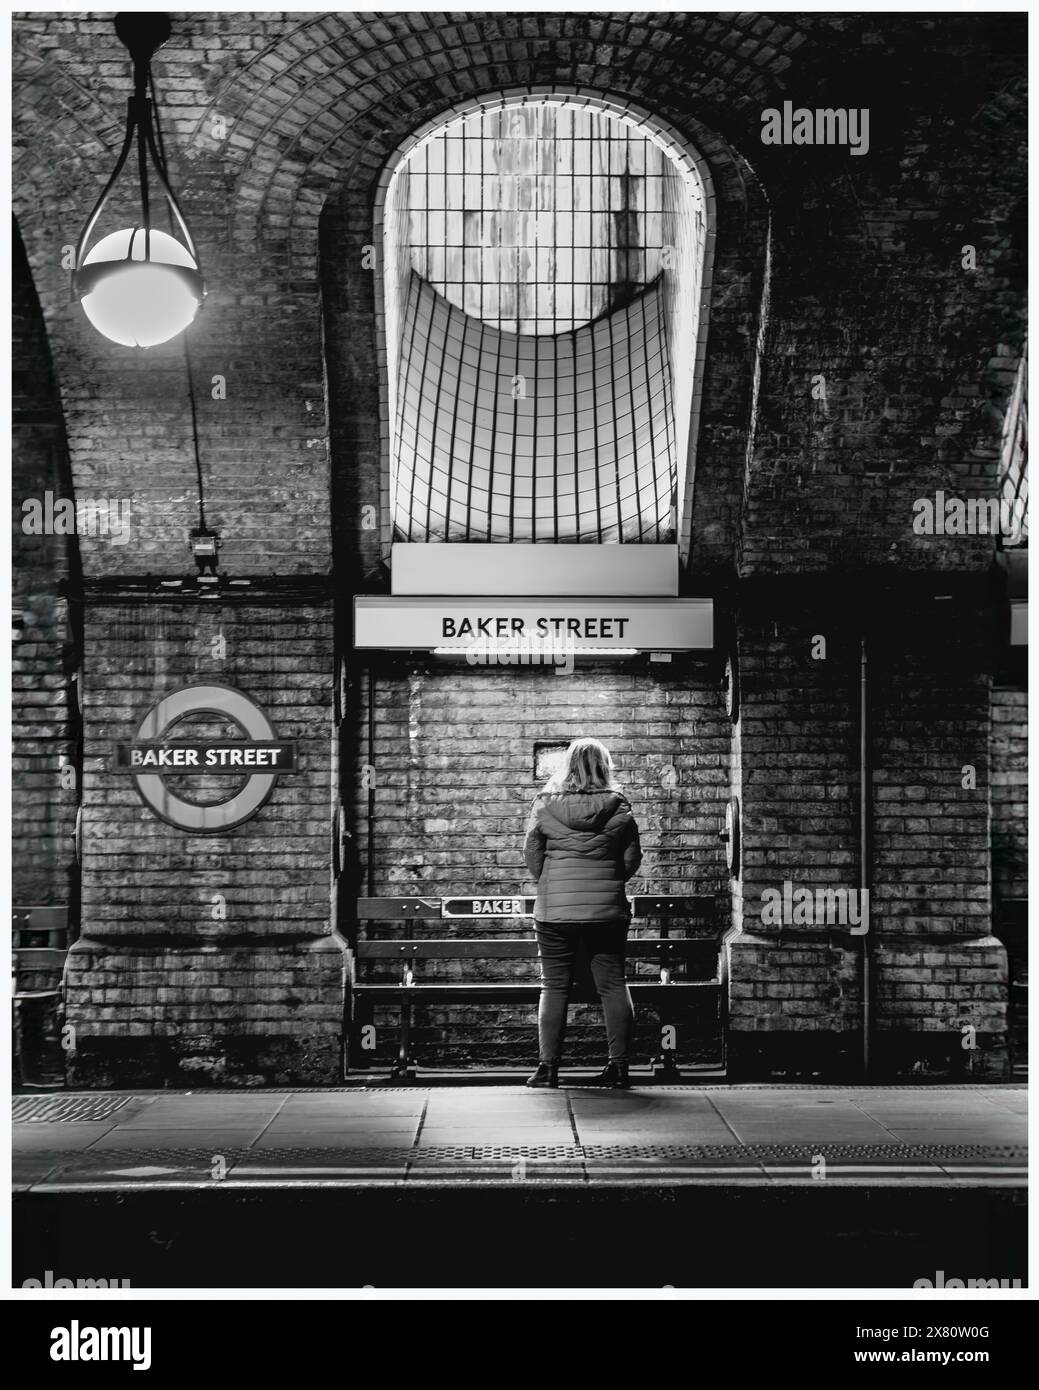 Schwarzweißbild - eine Person steht auf dem Bahnsteig der Baker Street, gegenüber der Position der Kamera und wird von oben beleuchtet Stockfoto